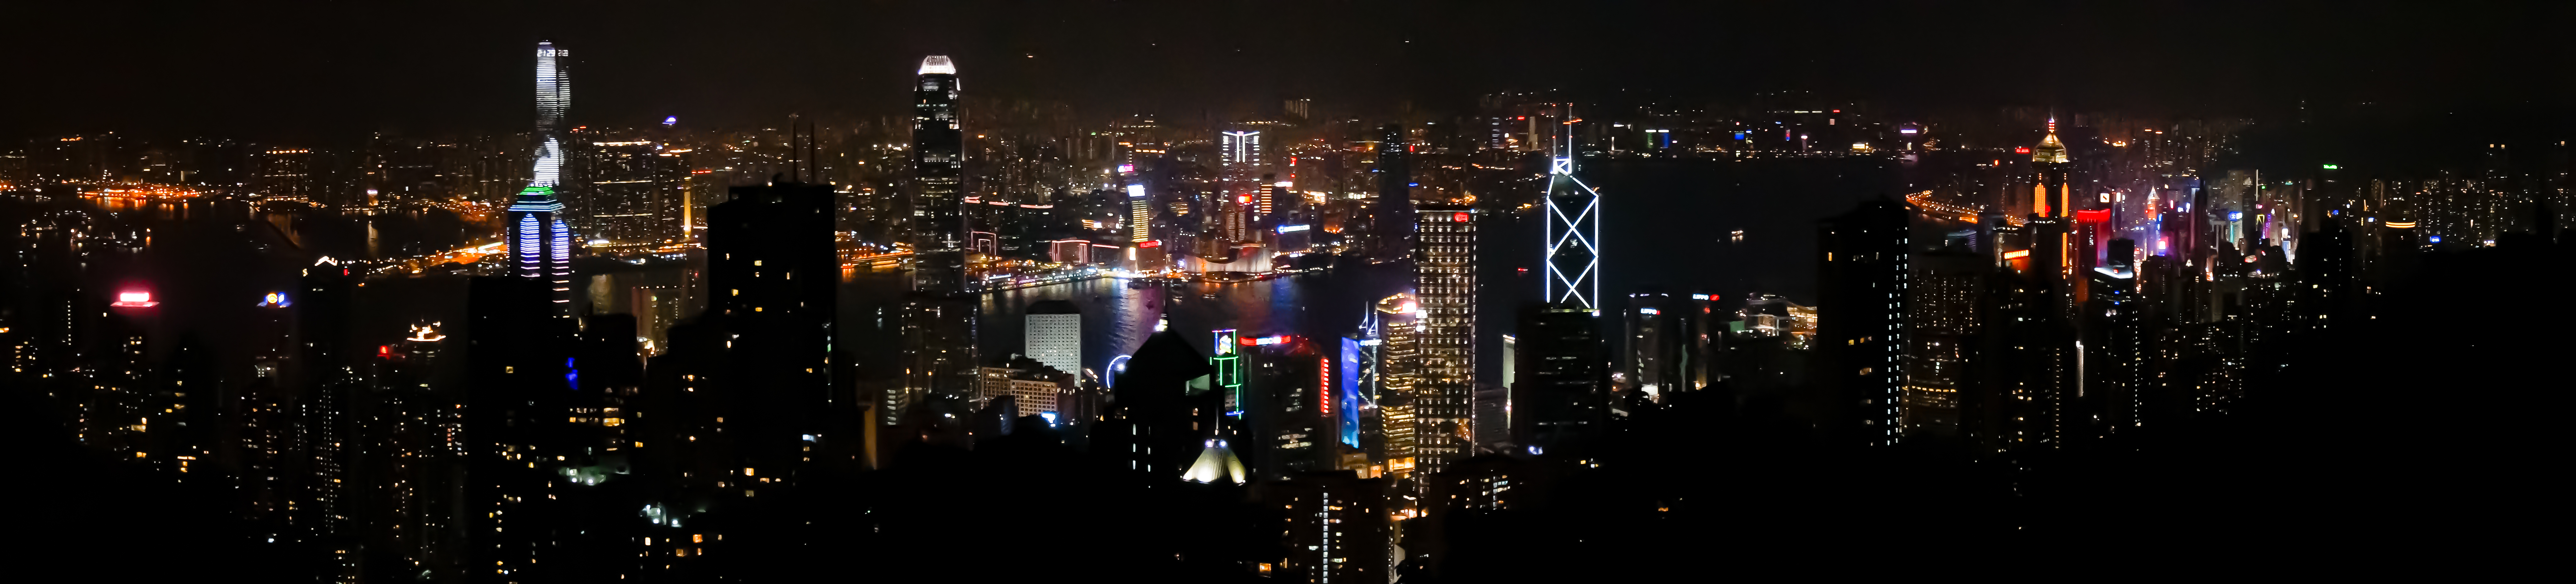 Hong Kong Skyline at Night